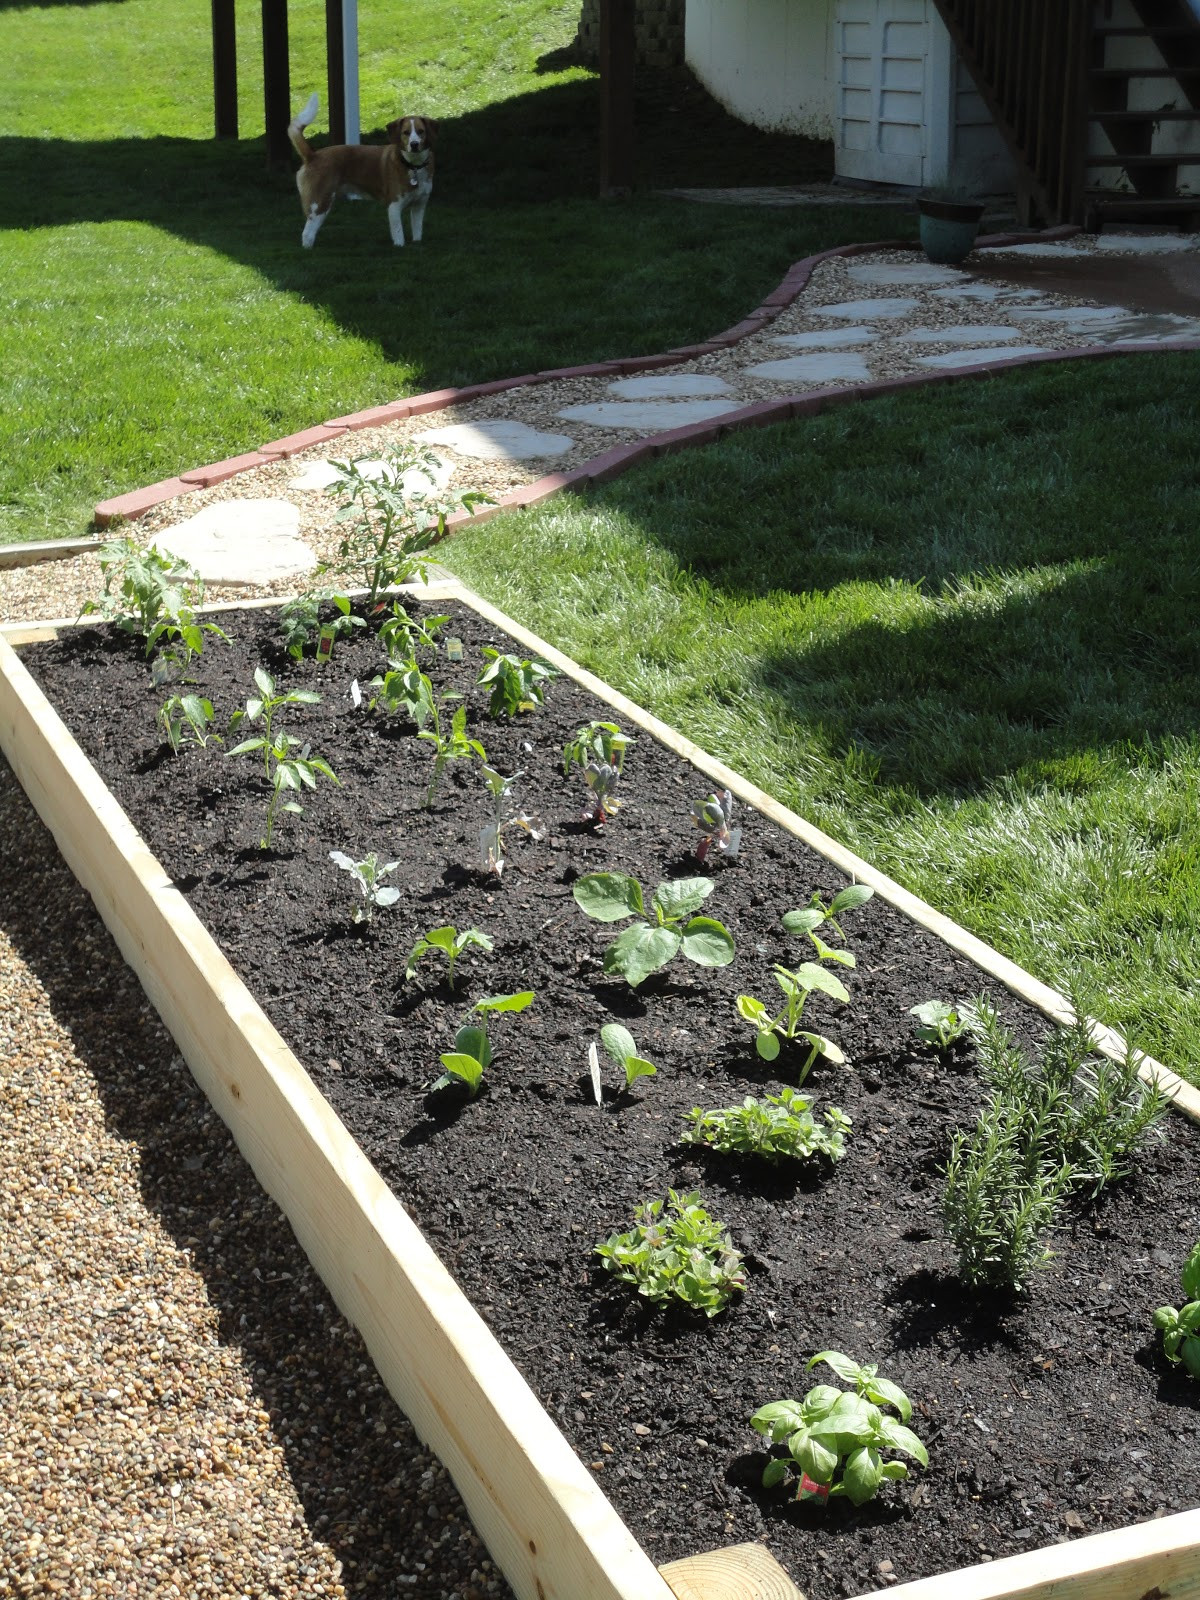 Best ideas about DIY Garden Bed
. Save or Pin Vanilla Bean DIY Raised Garden Bed Now.